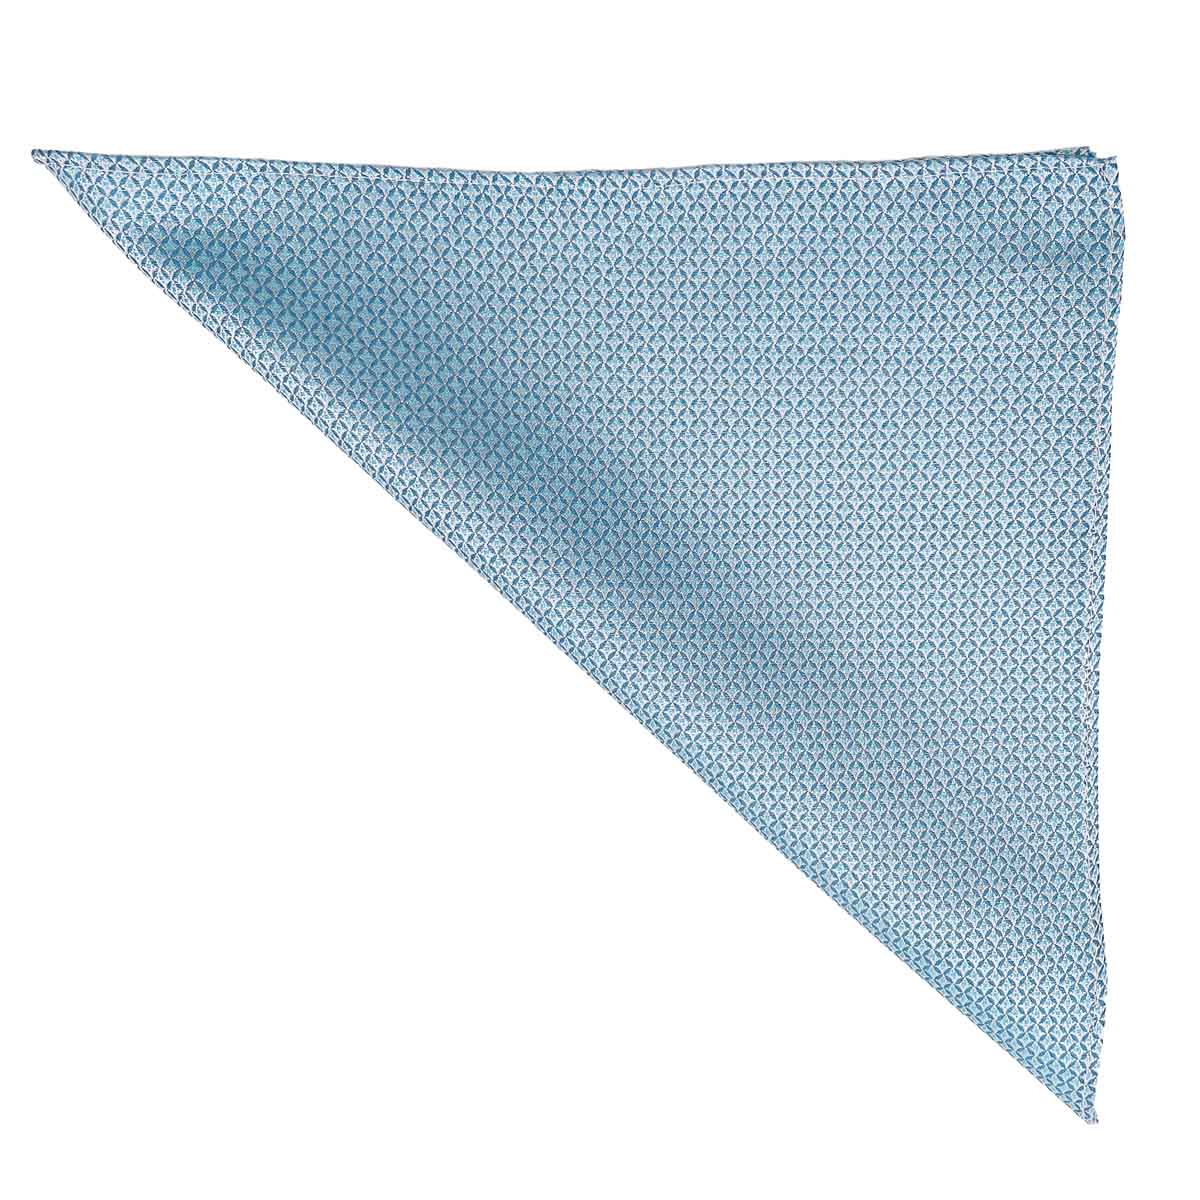 Pochette de costume en 100% soie - Twill de soie - Bleu - 26x26 cm - Draeger